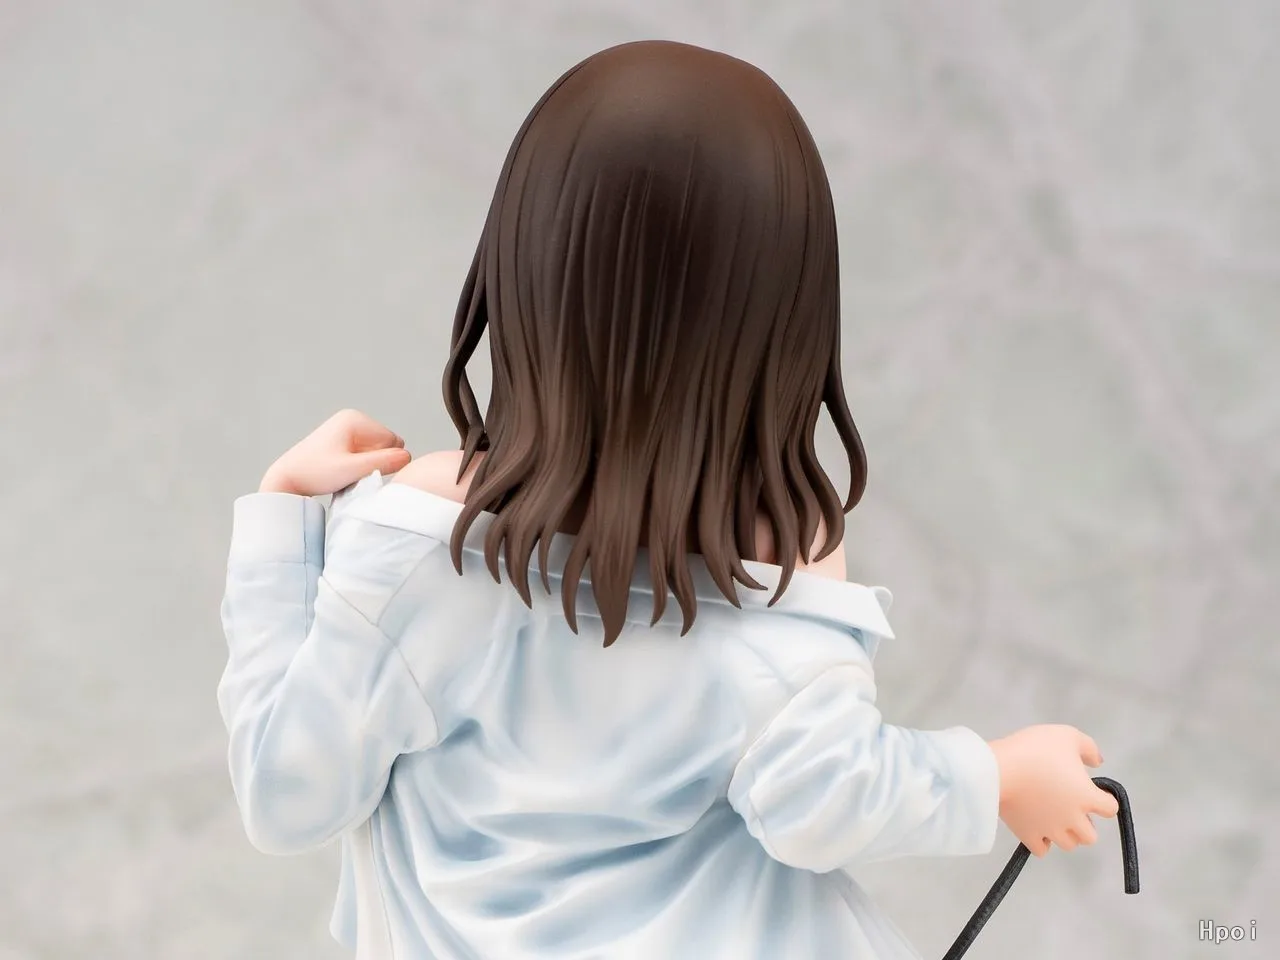 1 6 Scale Japan Anime DAIKI Mataro Wet JK Kuromine Aya PVC Action Figure Toy Adult